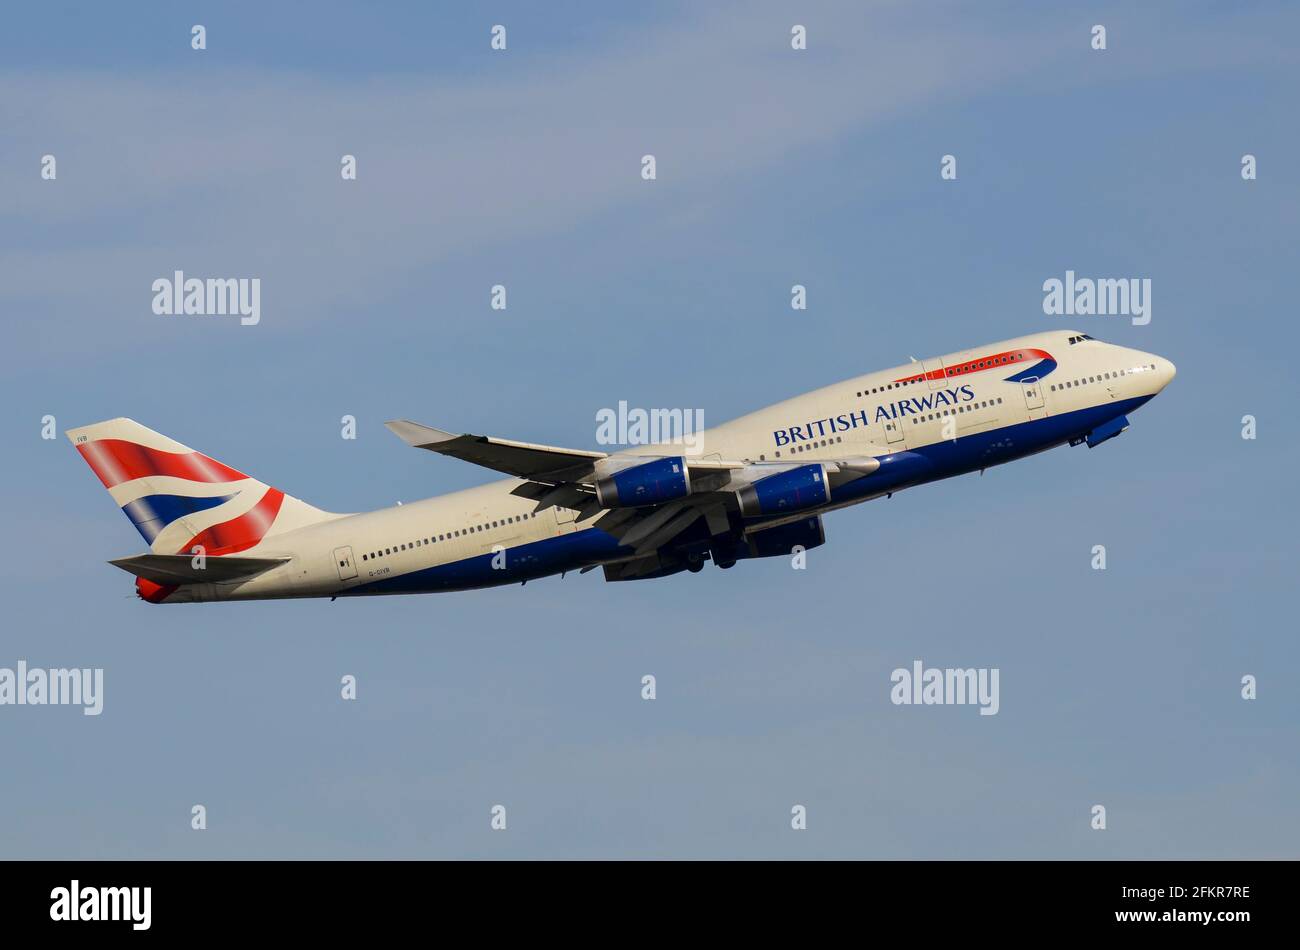 British Airways Boeing 747 jumbo aereo jet G-CIVB decollo dall'aeroporto di Londra Heathrow, Regno Unito. Arrampicarsi fuori per un lungo raggio internazionale Foto Stock